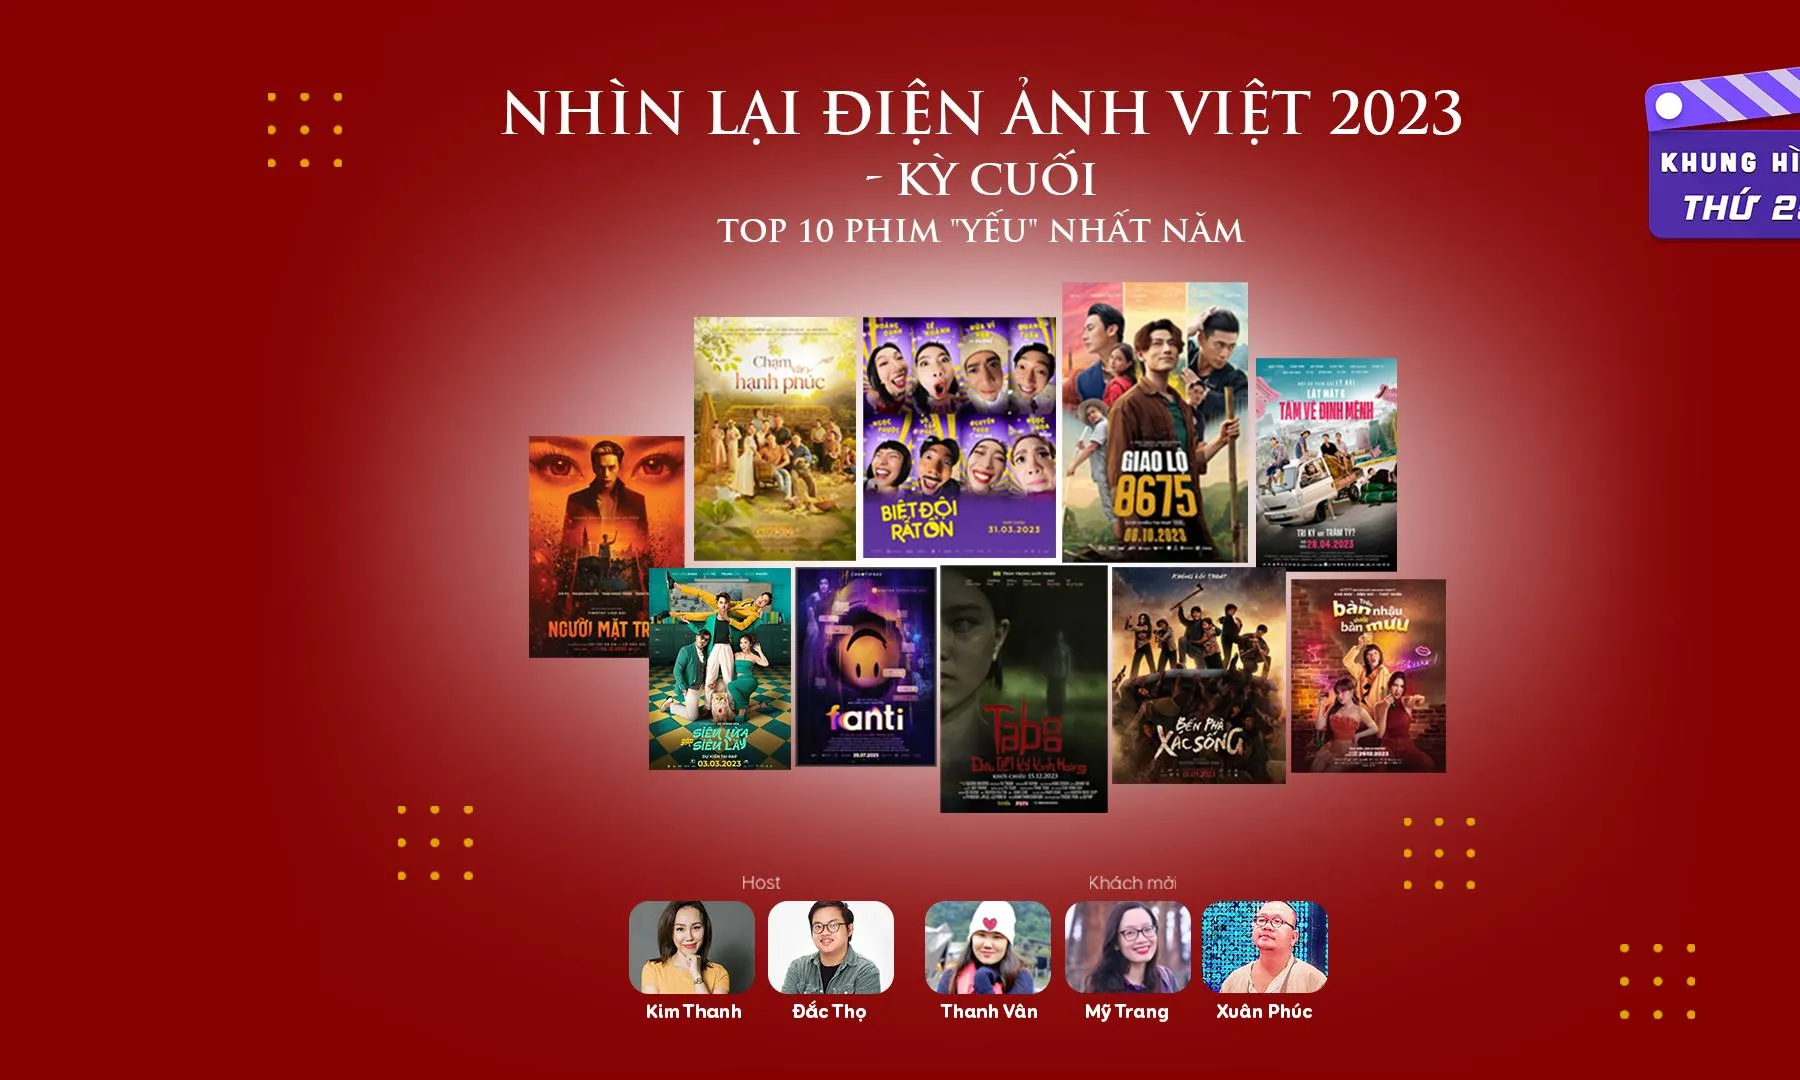 Nhìn lại điện ảnh Việt 2023, kỳ cuối: Những bộ phim yếu nhất năm 2023 (top 7 - top 10)